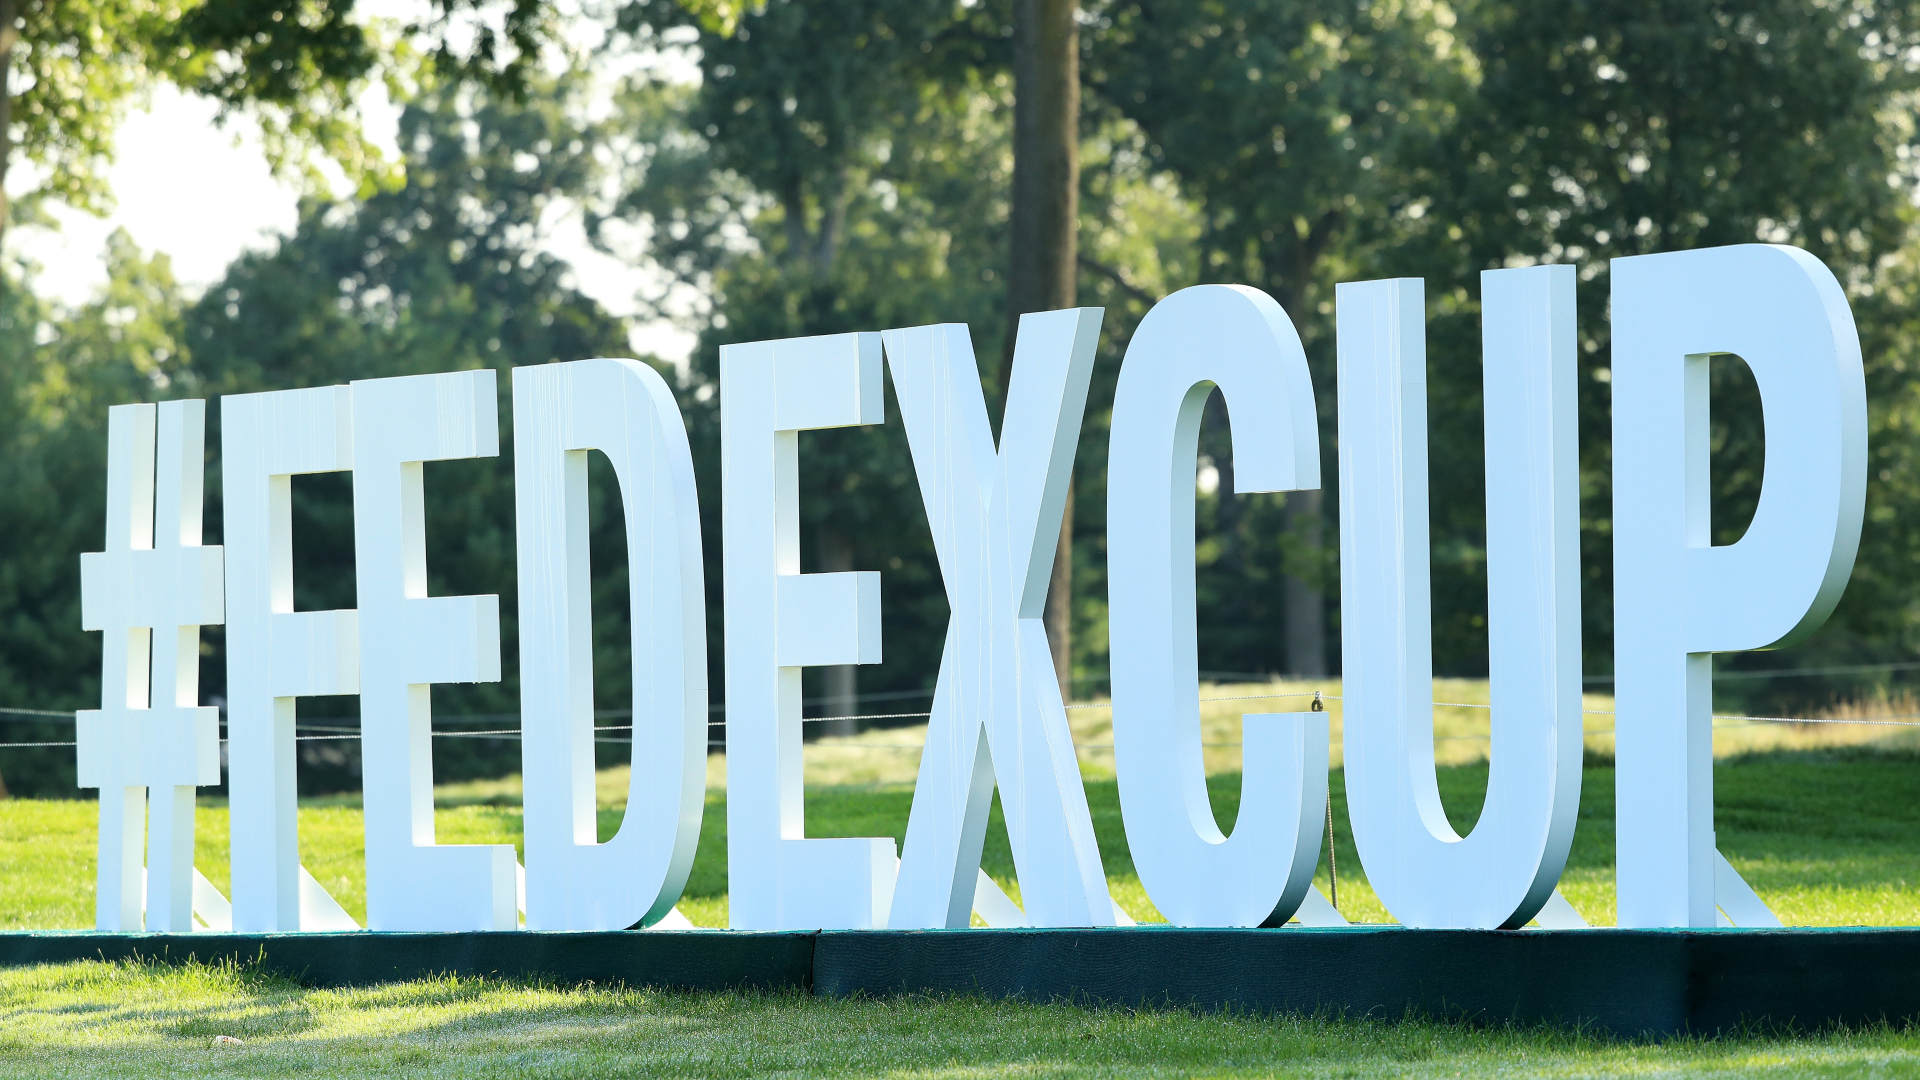 Golf Fedex Cup